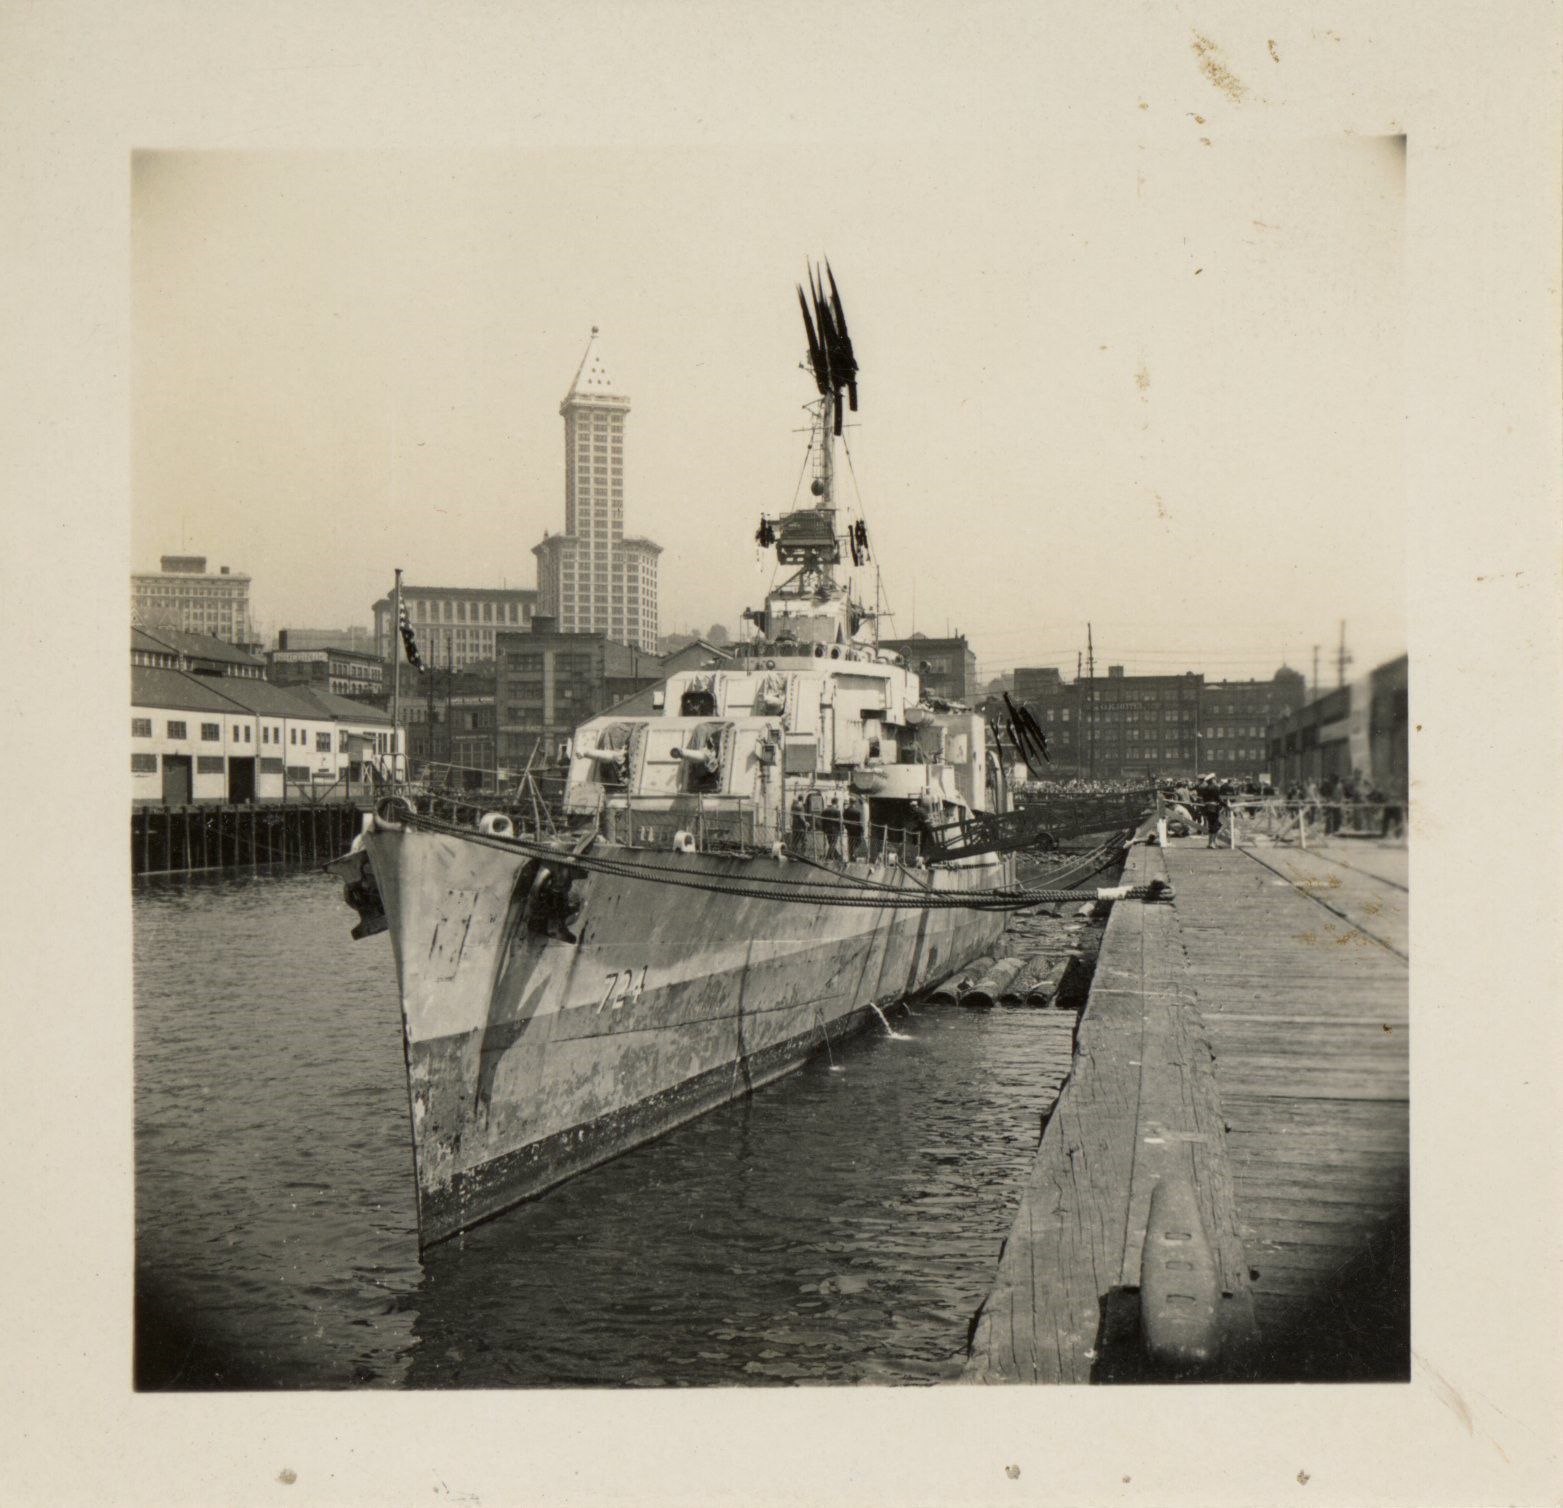 Primary Image of Set of USS Laffey Damage Photographs, Tacoma, Washington